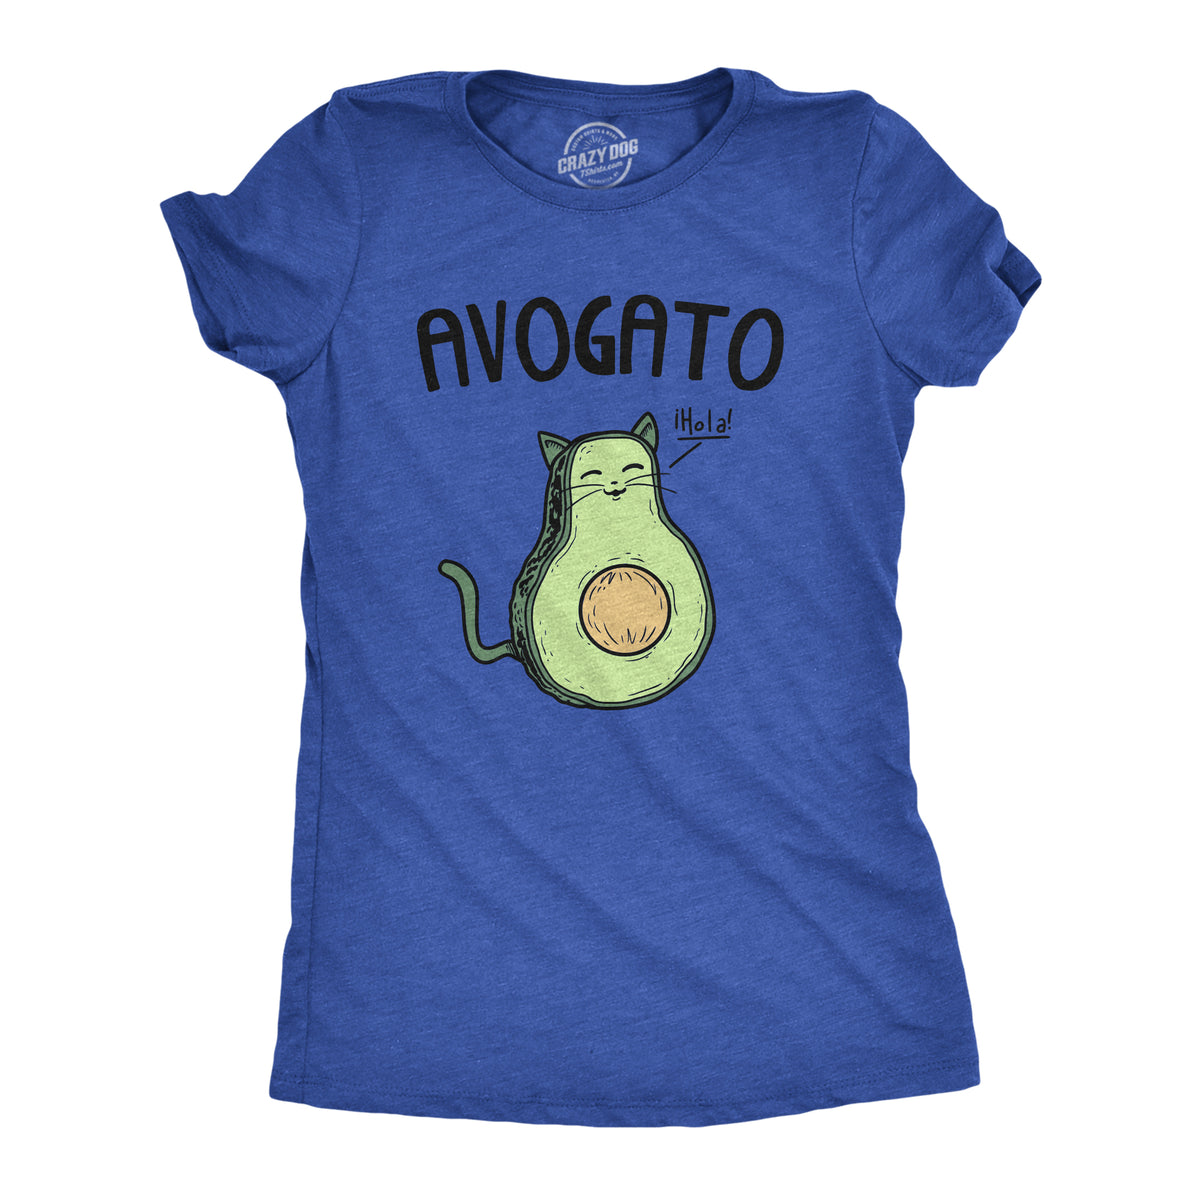 Funny Heather Royal - Avogato Avogato Womens T Shirt Nerdy Cinco De Mayo Food Cat Tee